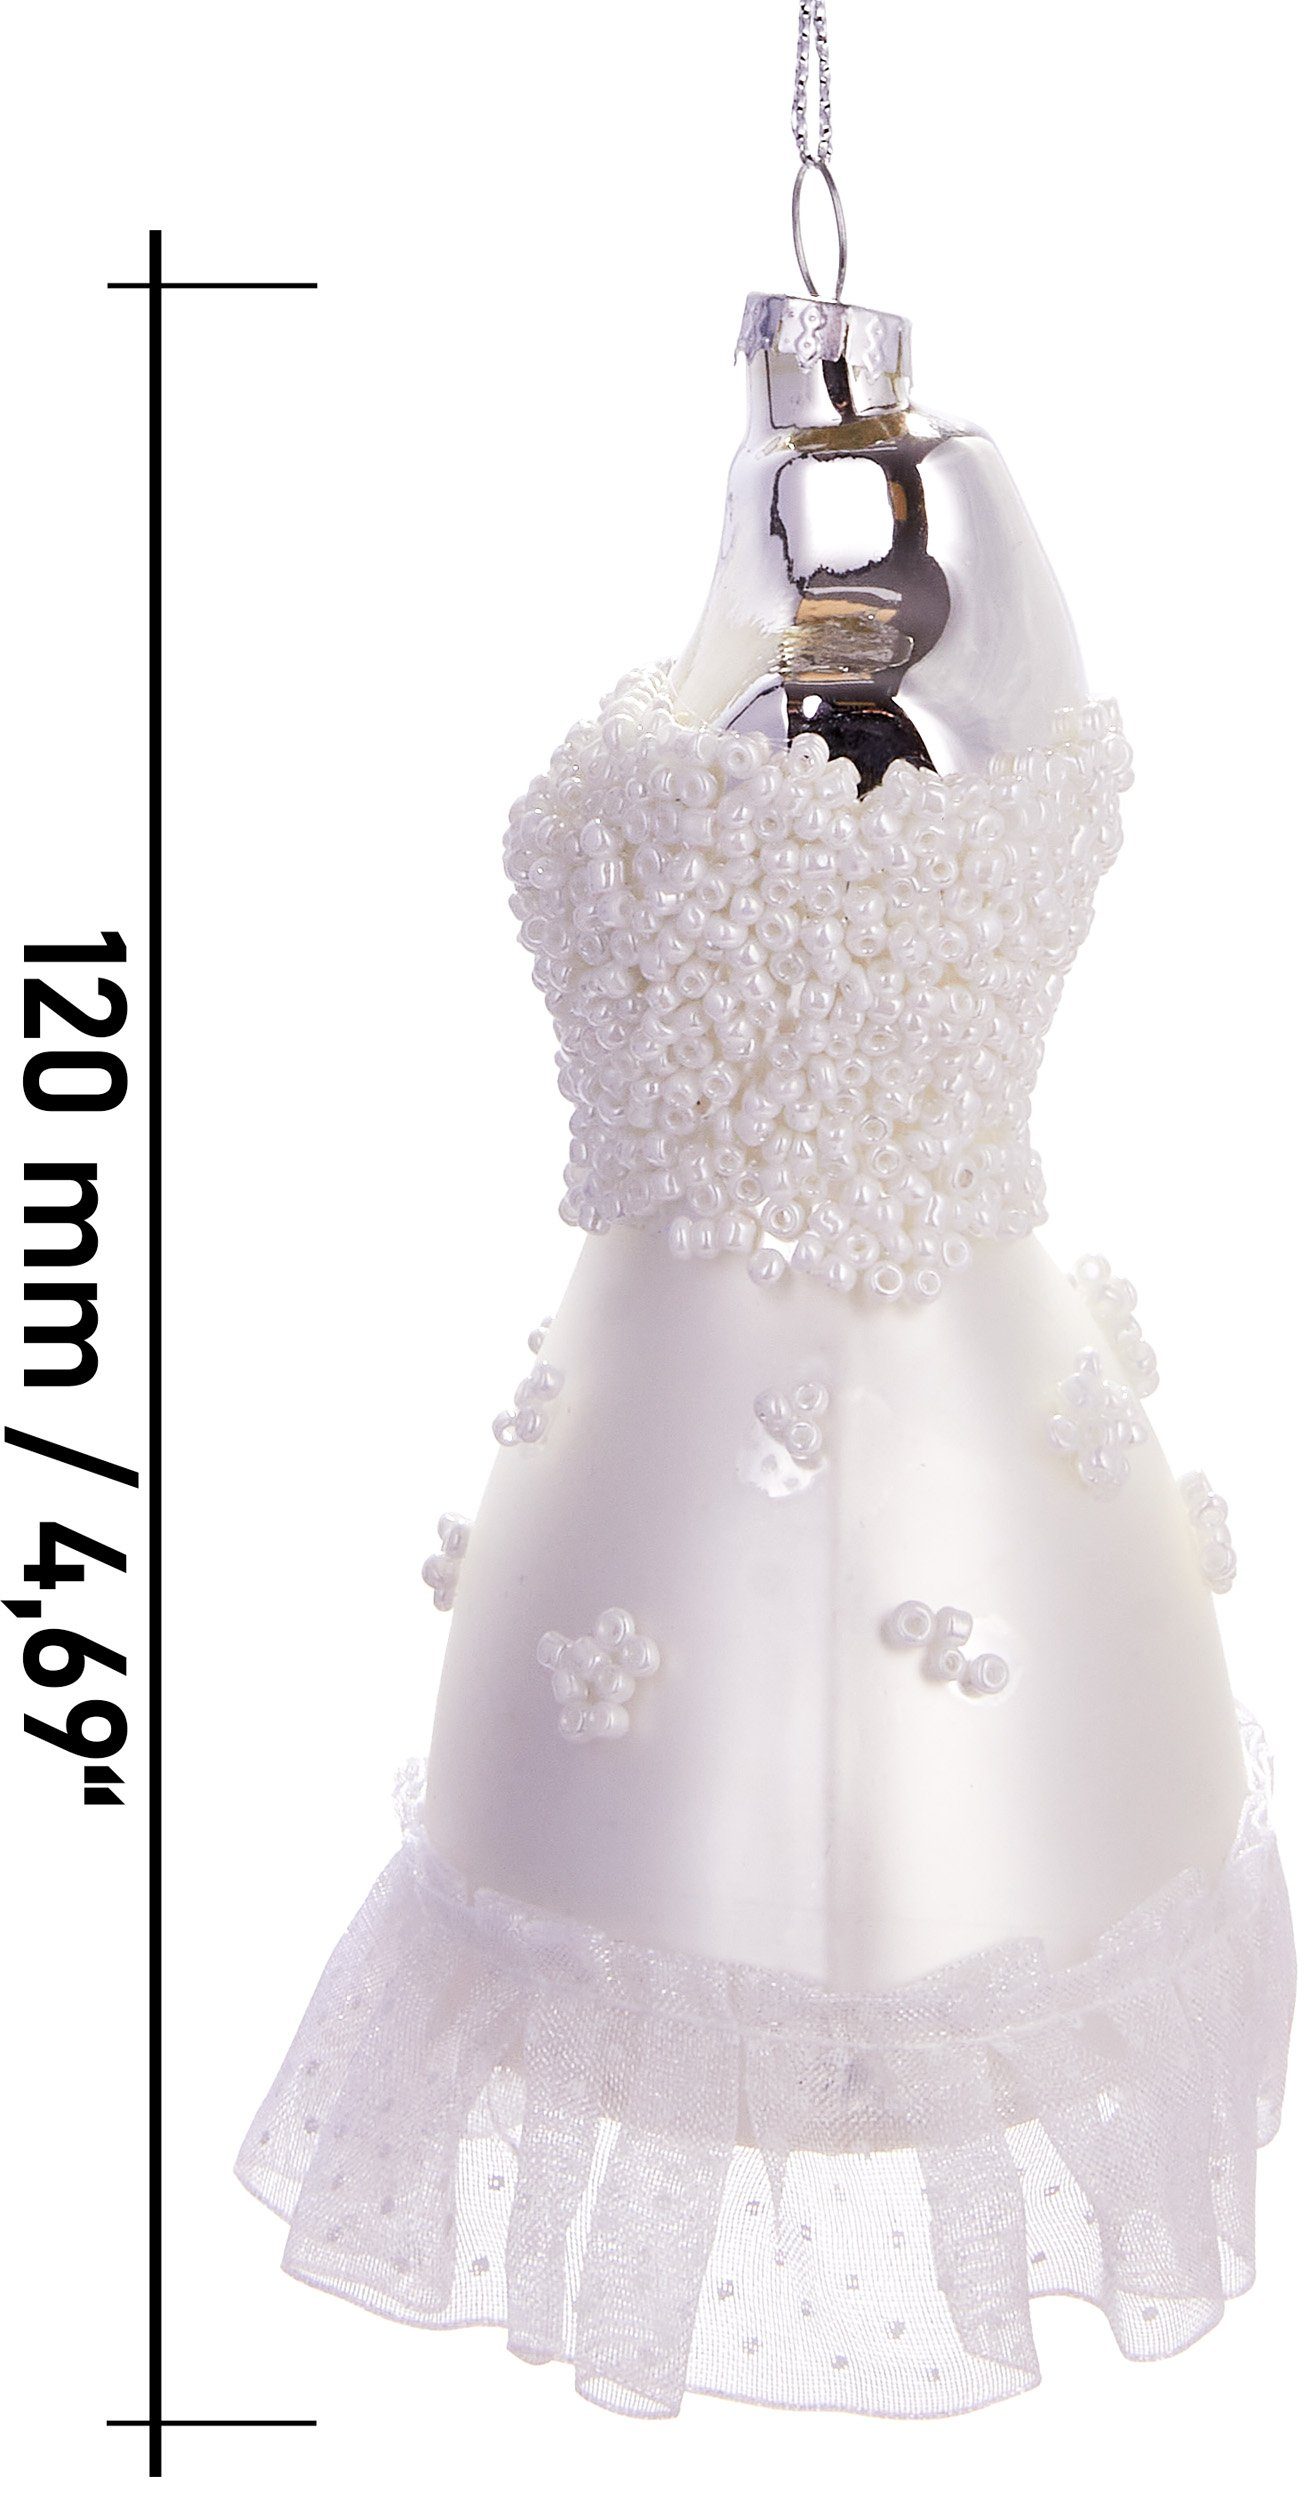 BRUBAKER Christbaumschmuck Handbemalte Brautkleid, - cm 12 mundgeblasenes aus Glas, Weihnachtsdekoration Weihnachtskugel elegante Unikat Weißes